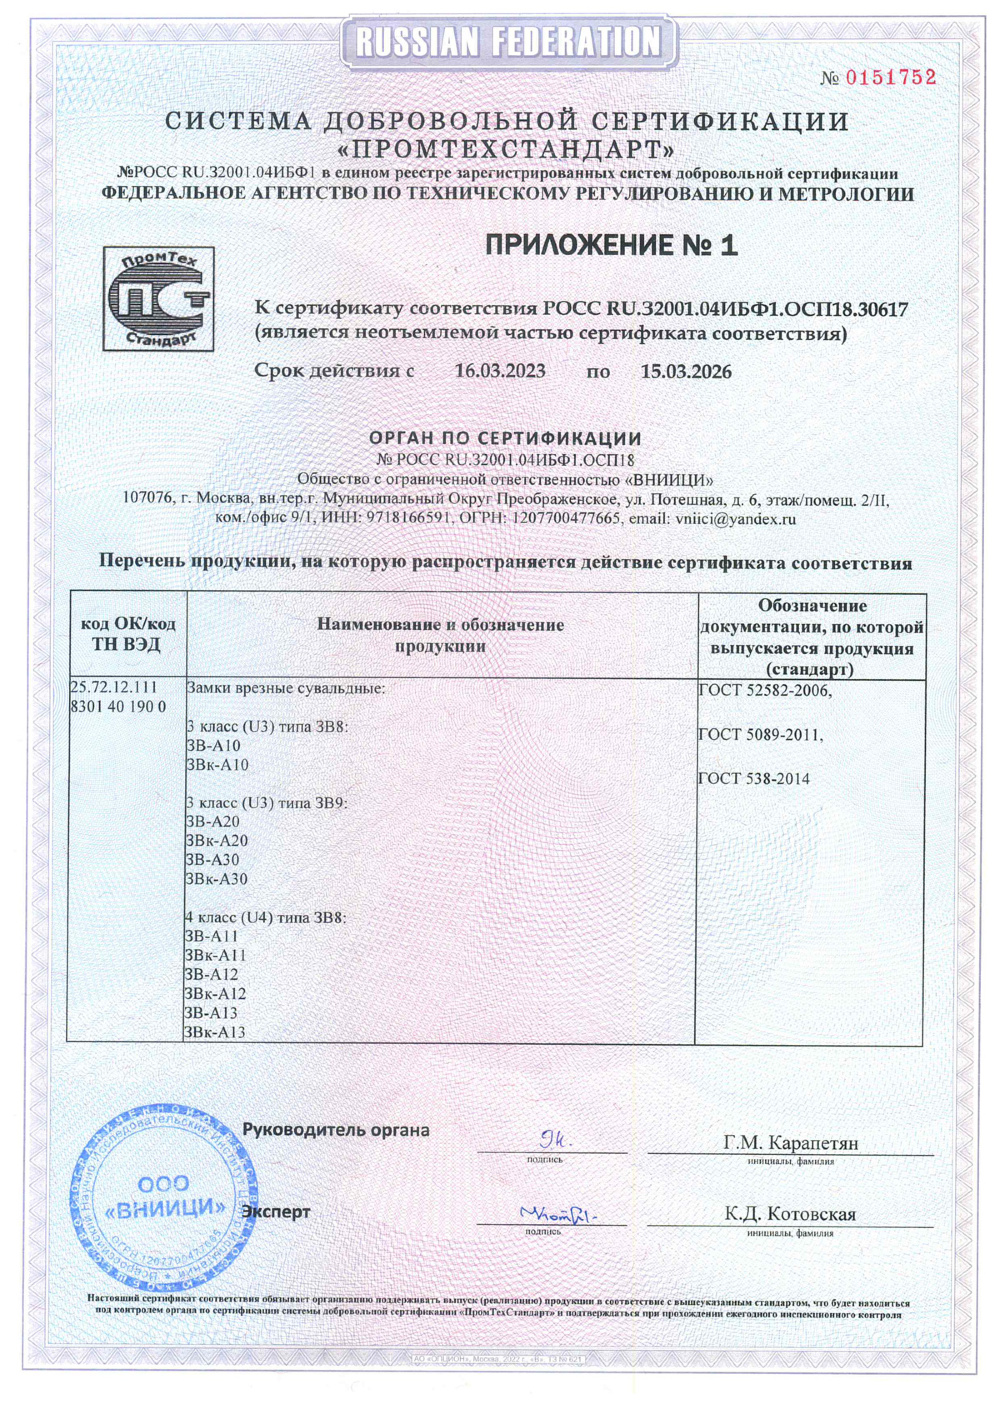 сертификат соответствия для замка А30 стр2